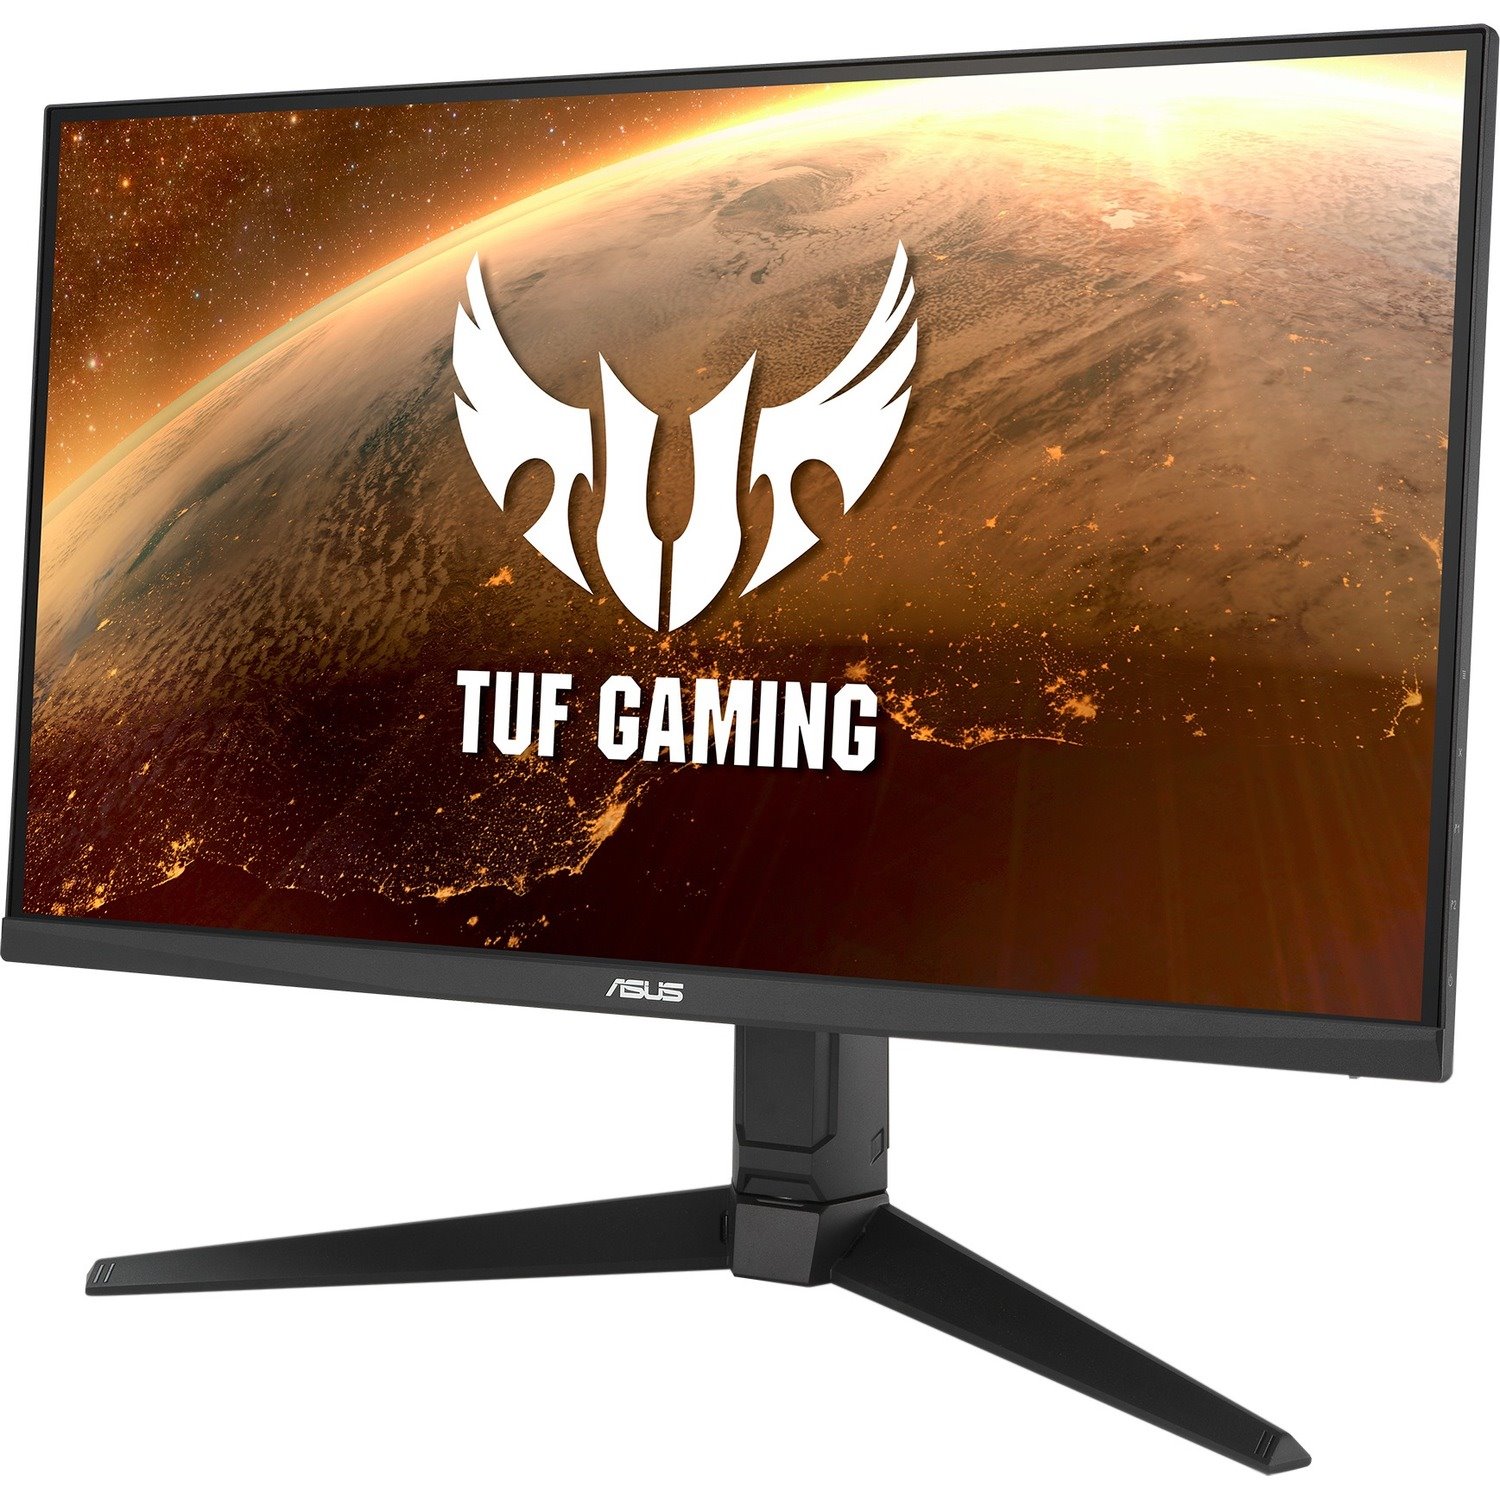 TUF VG279QL1A 27" Full HD WLED Gaming LCD Monitor - 16:9 - Black